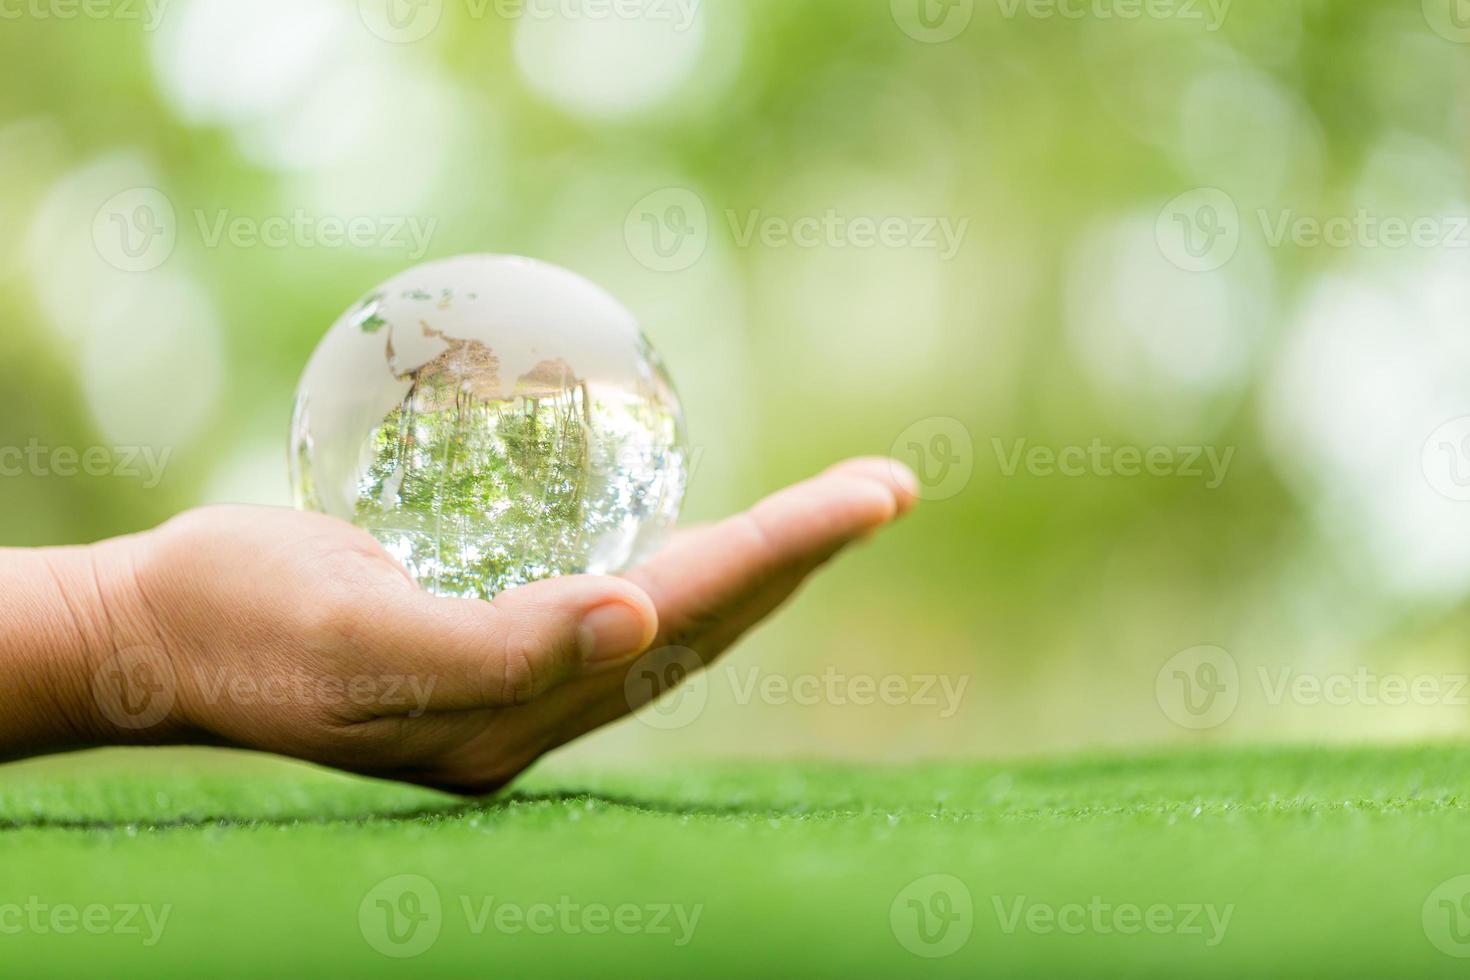 bola de cristal usada como um objeto revelador. parque natural com árvores ao fundo. mão para ambiental, social e governança em negócios sustentáveis e éticos em fundo verde. foto